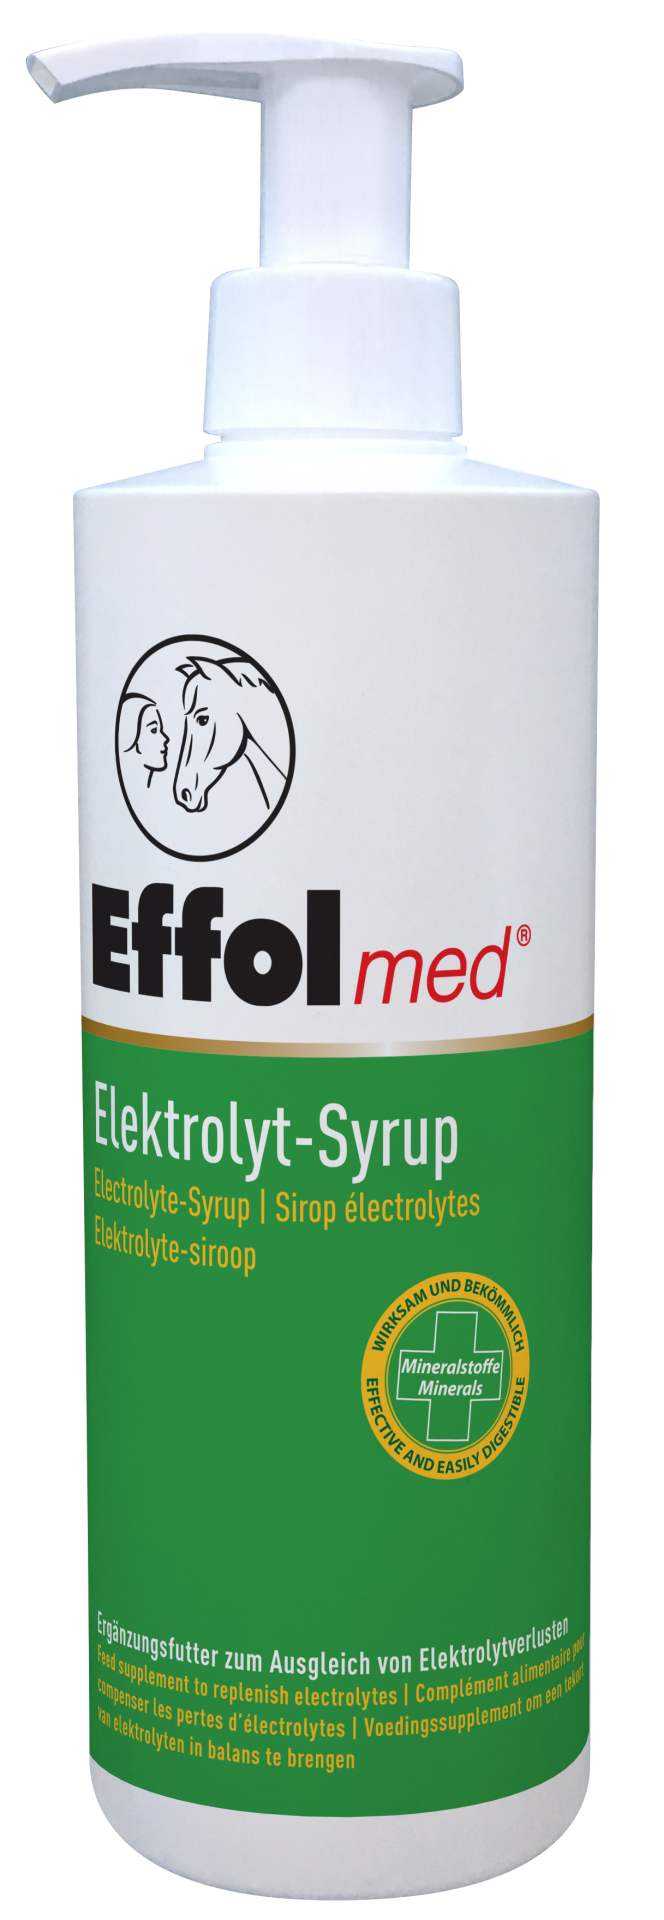 Effol med Electrolyt-Syrup